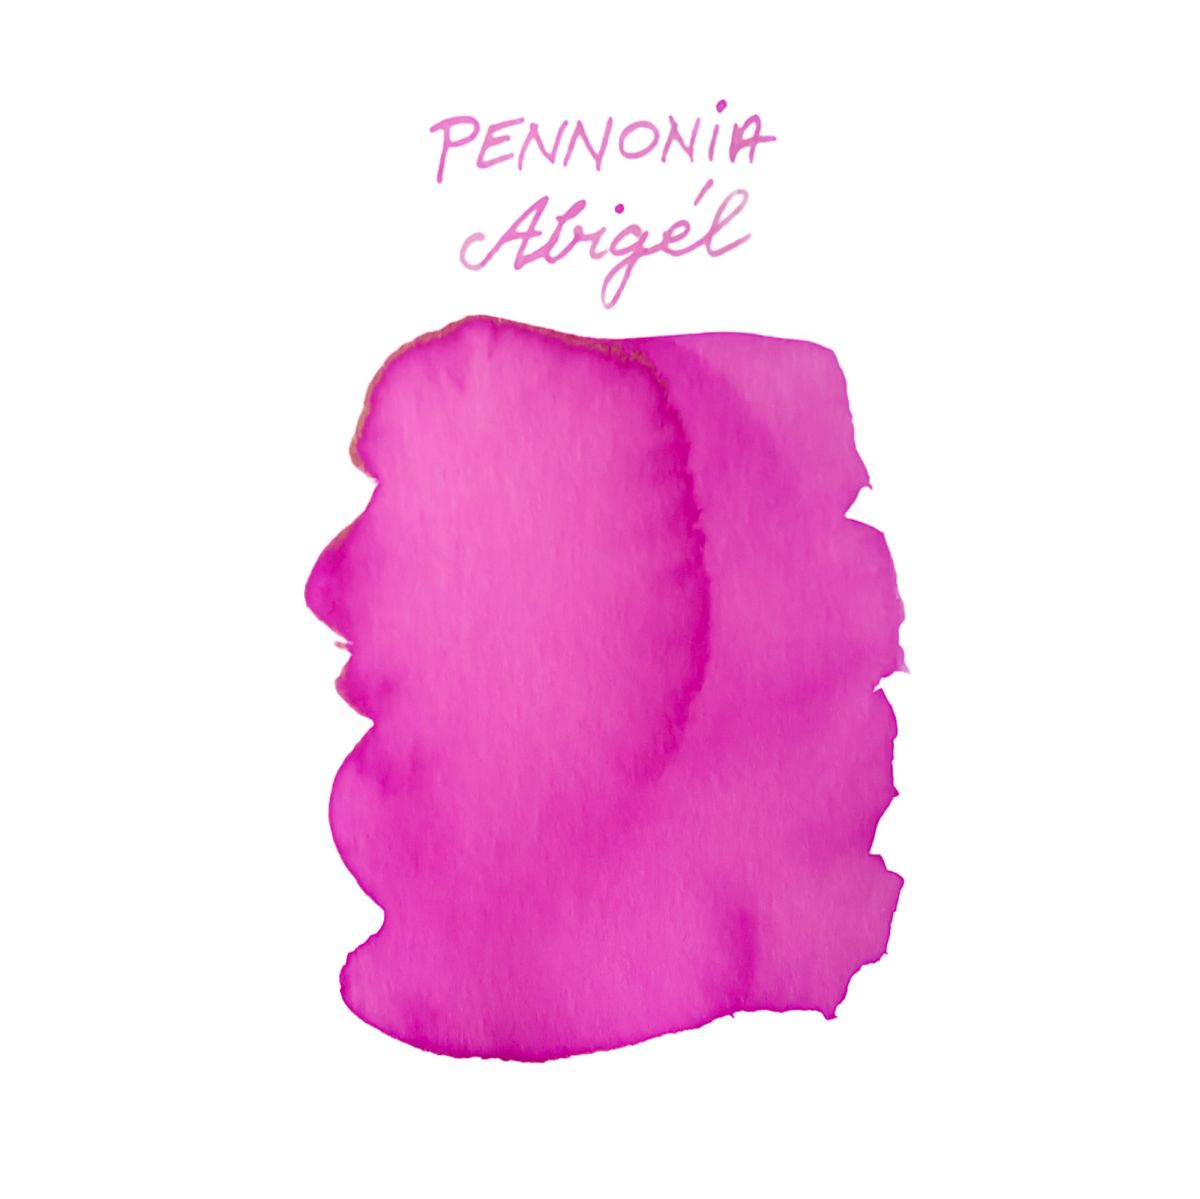 Pennonia Agigel